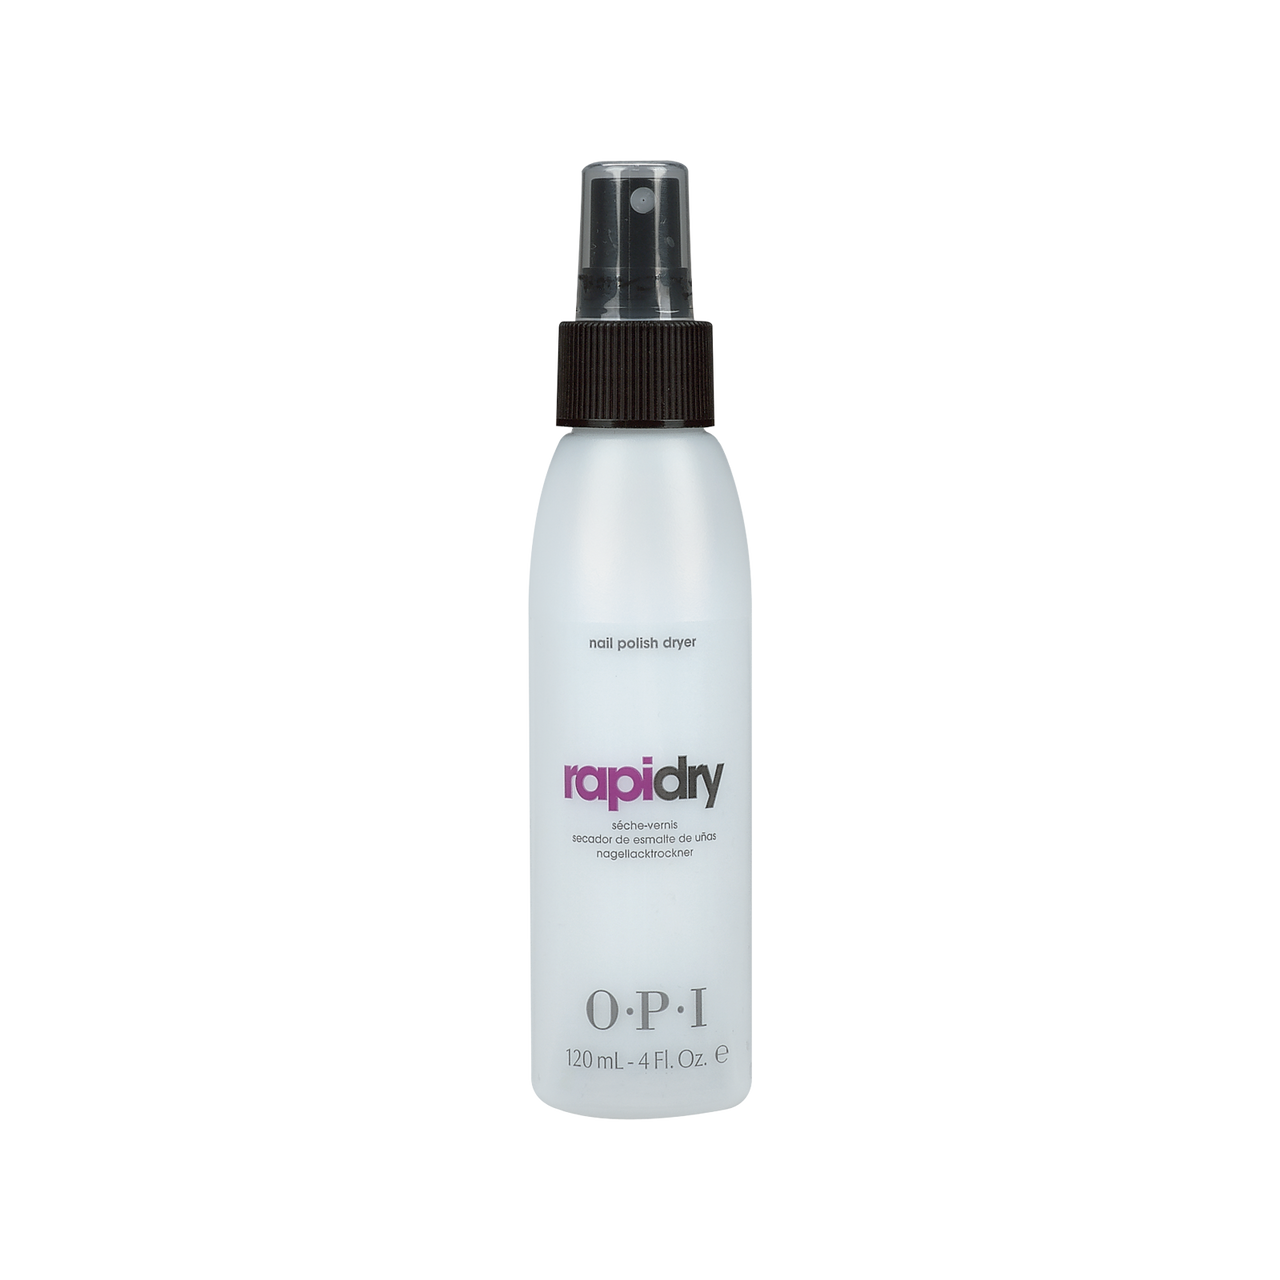 OPI RapiDry Spray Nail Polish Dryer 4 fl oz